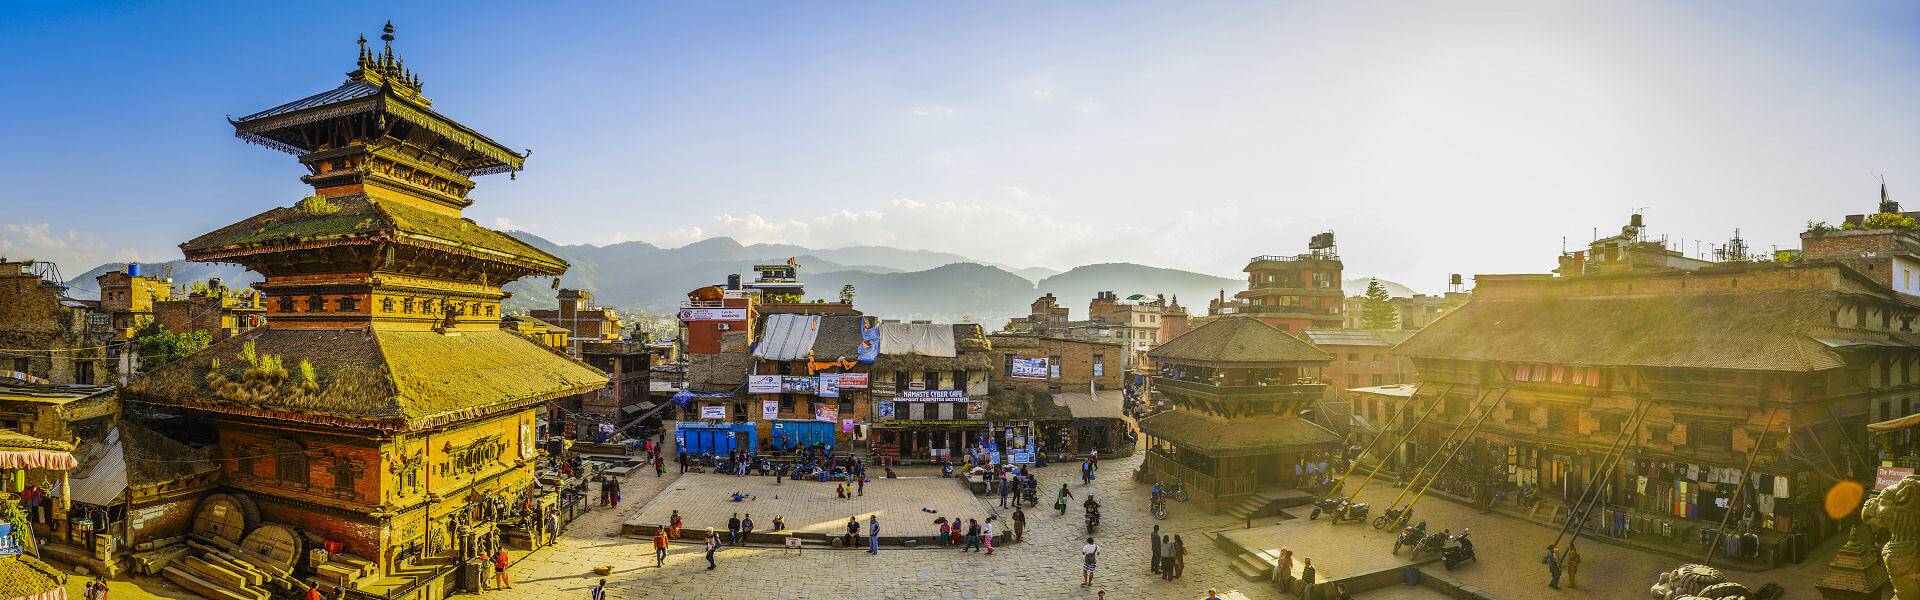 Erleben Sie bei Ihrer Nepal Rundreise Kathmandu, Annapurna-Gebirge und Nationalparks